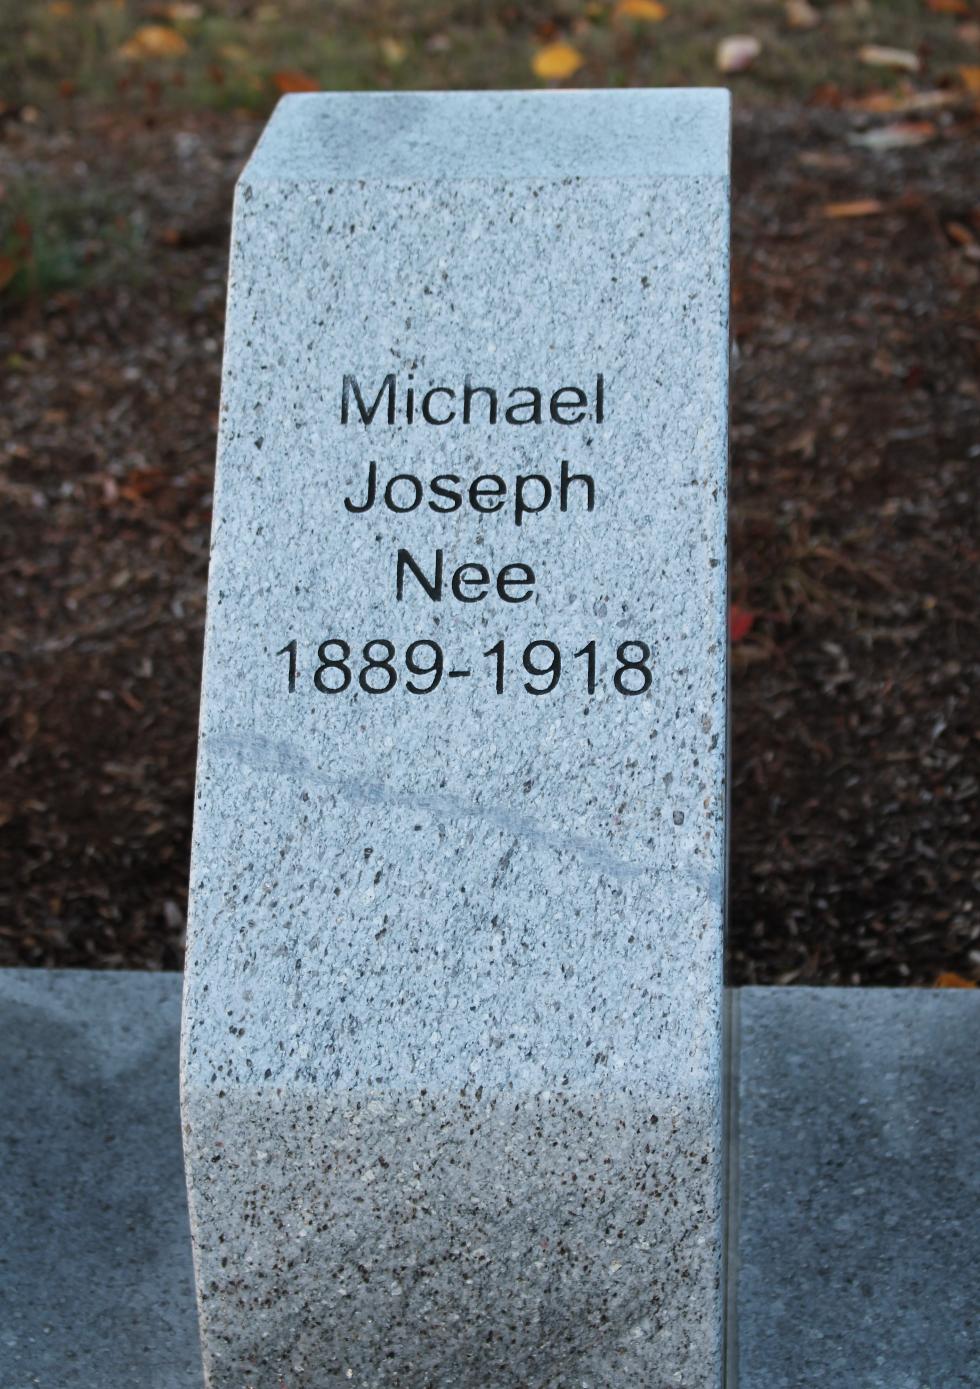 Shrewsbury Massachusetts World War I Veterans Memorial Michael Joseph Nee